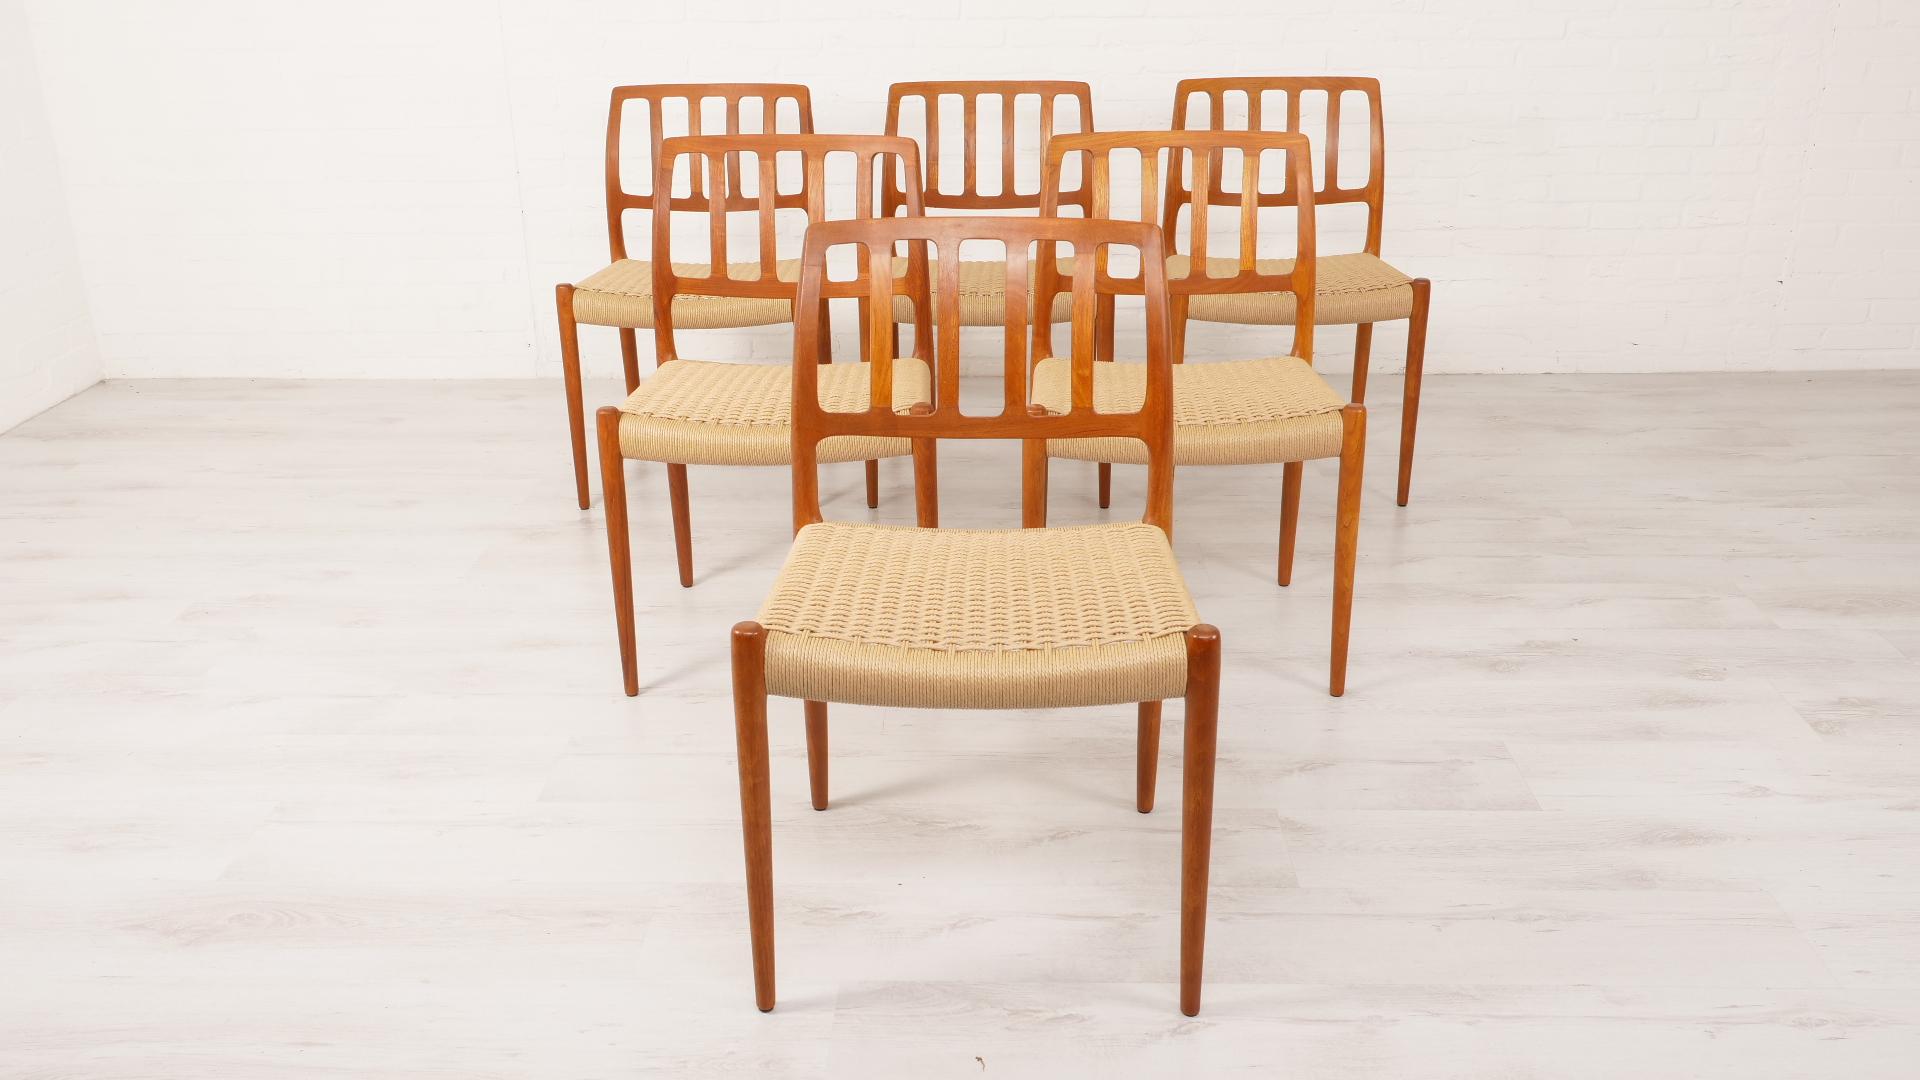 Ensemble de 6 belles et rares chaises de salle à manger vintage danoises. Ces chaises ont été conçues par Niels Otto Møller. Les chaises sont finies en teck et équipées de nouveaux cordons en papier.

Période de conception : 1950 - 1960
Style :